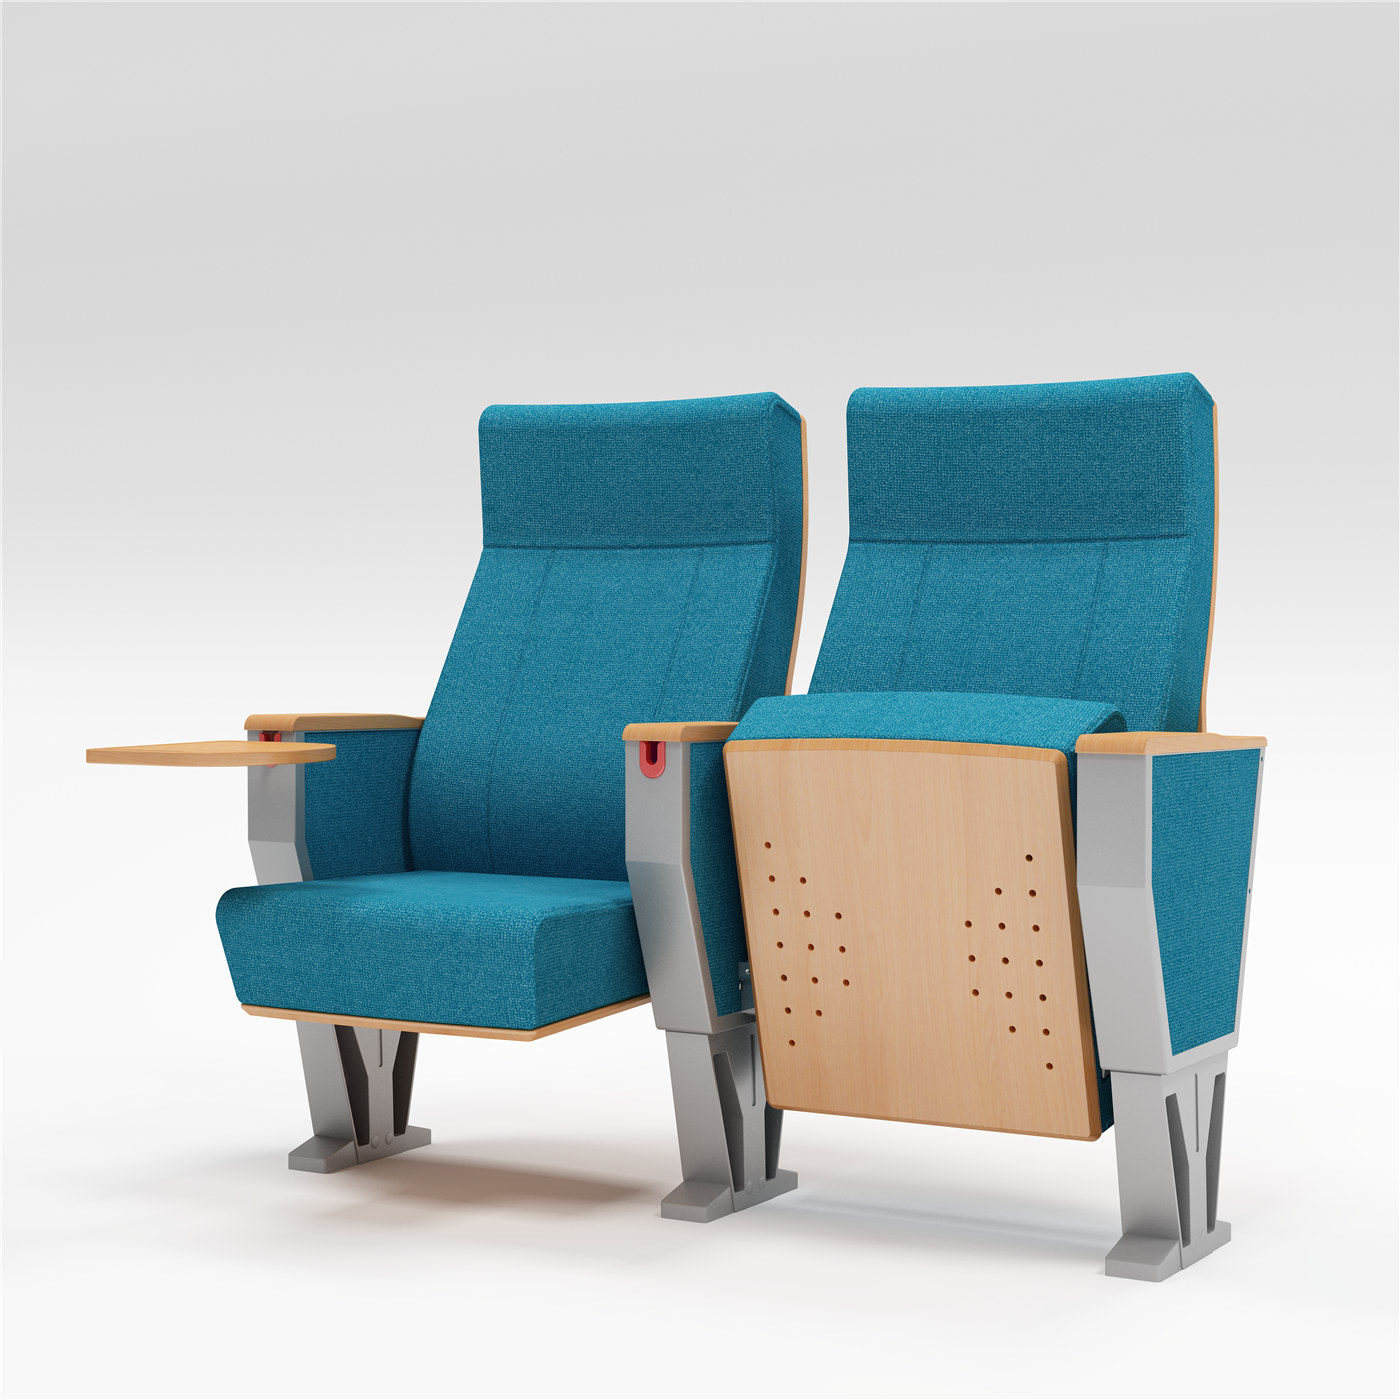 Du-ți scaunele din auditoriu la următorul nivel cu gama noastră exclusivă de scaune02